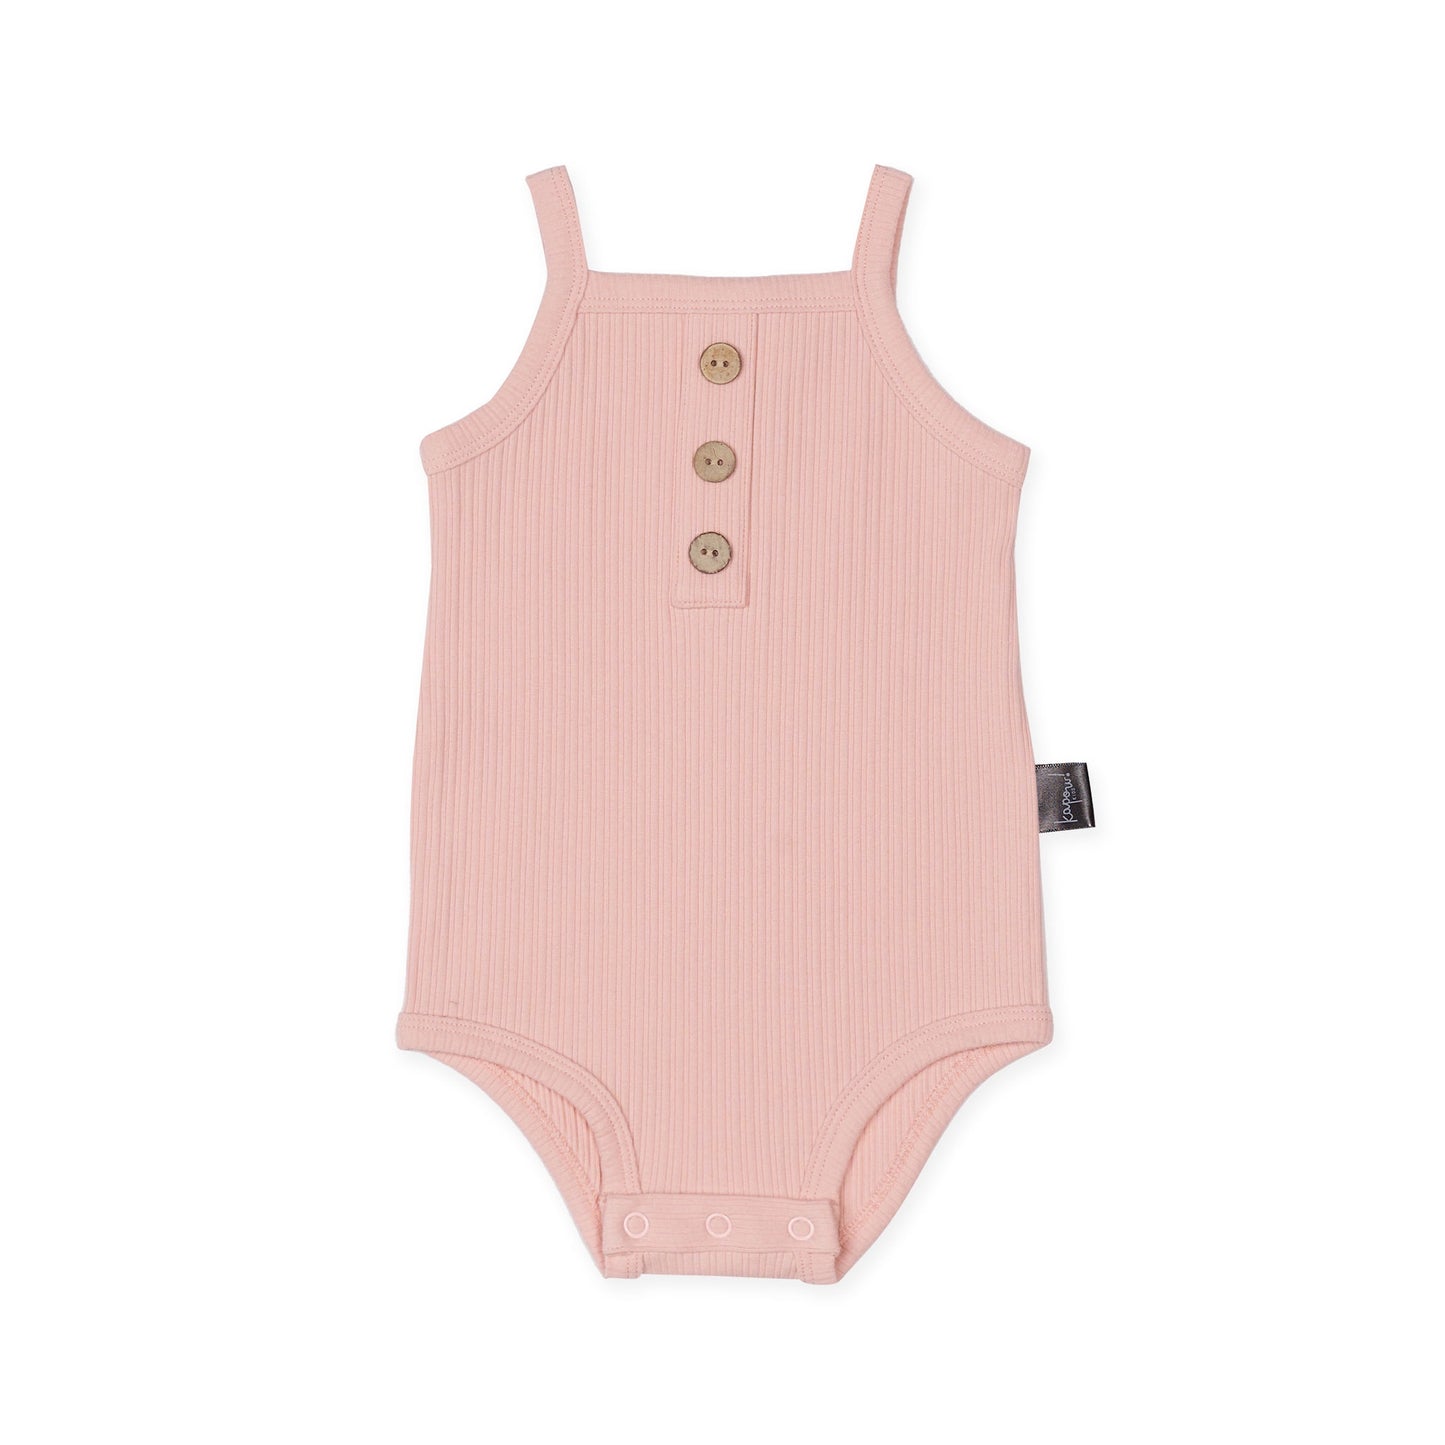 Shell Pink Rib Singlet Bodysuit